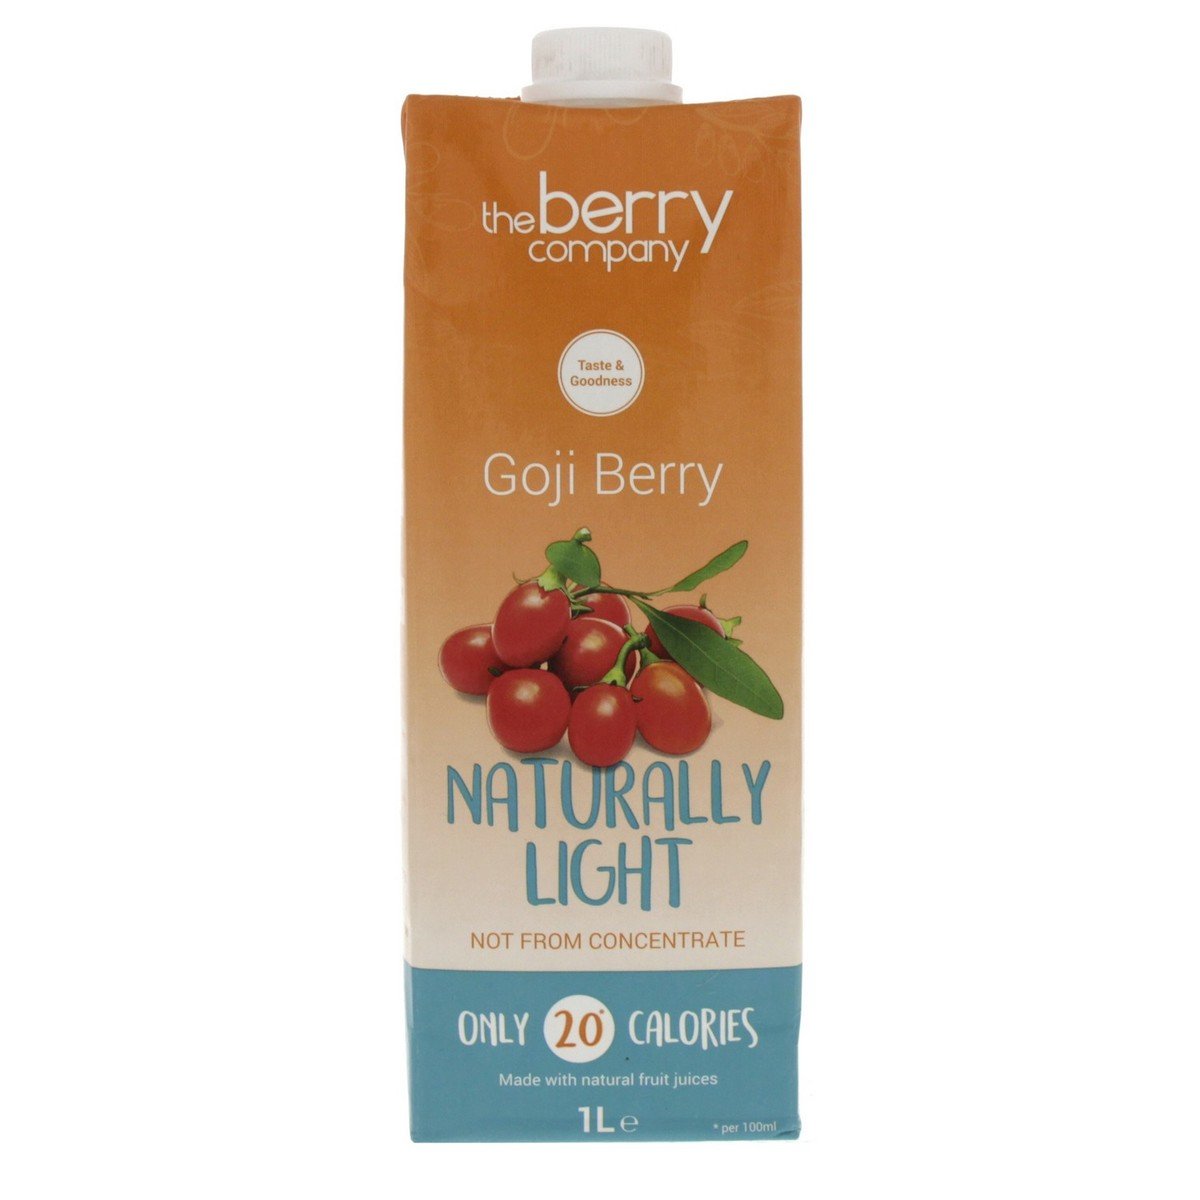 The Berry Company Goji Berry Naturally Light 1 Litre